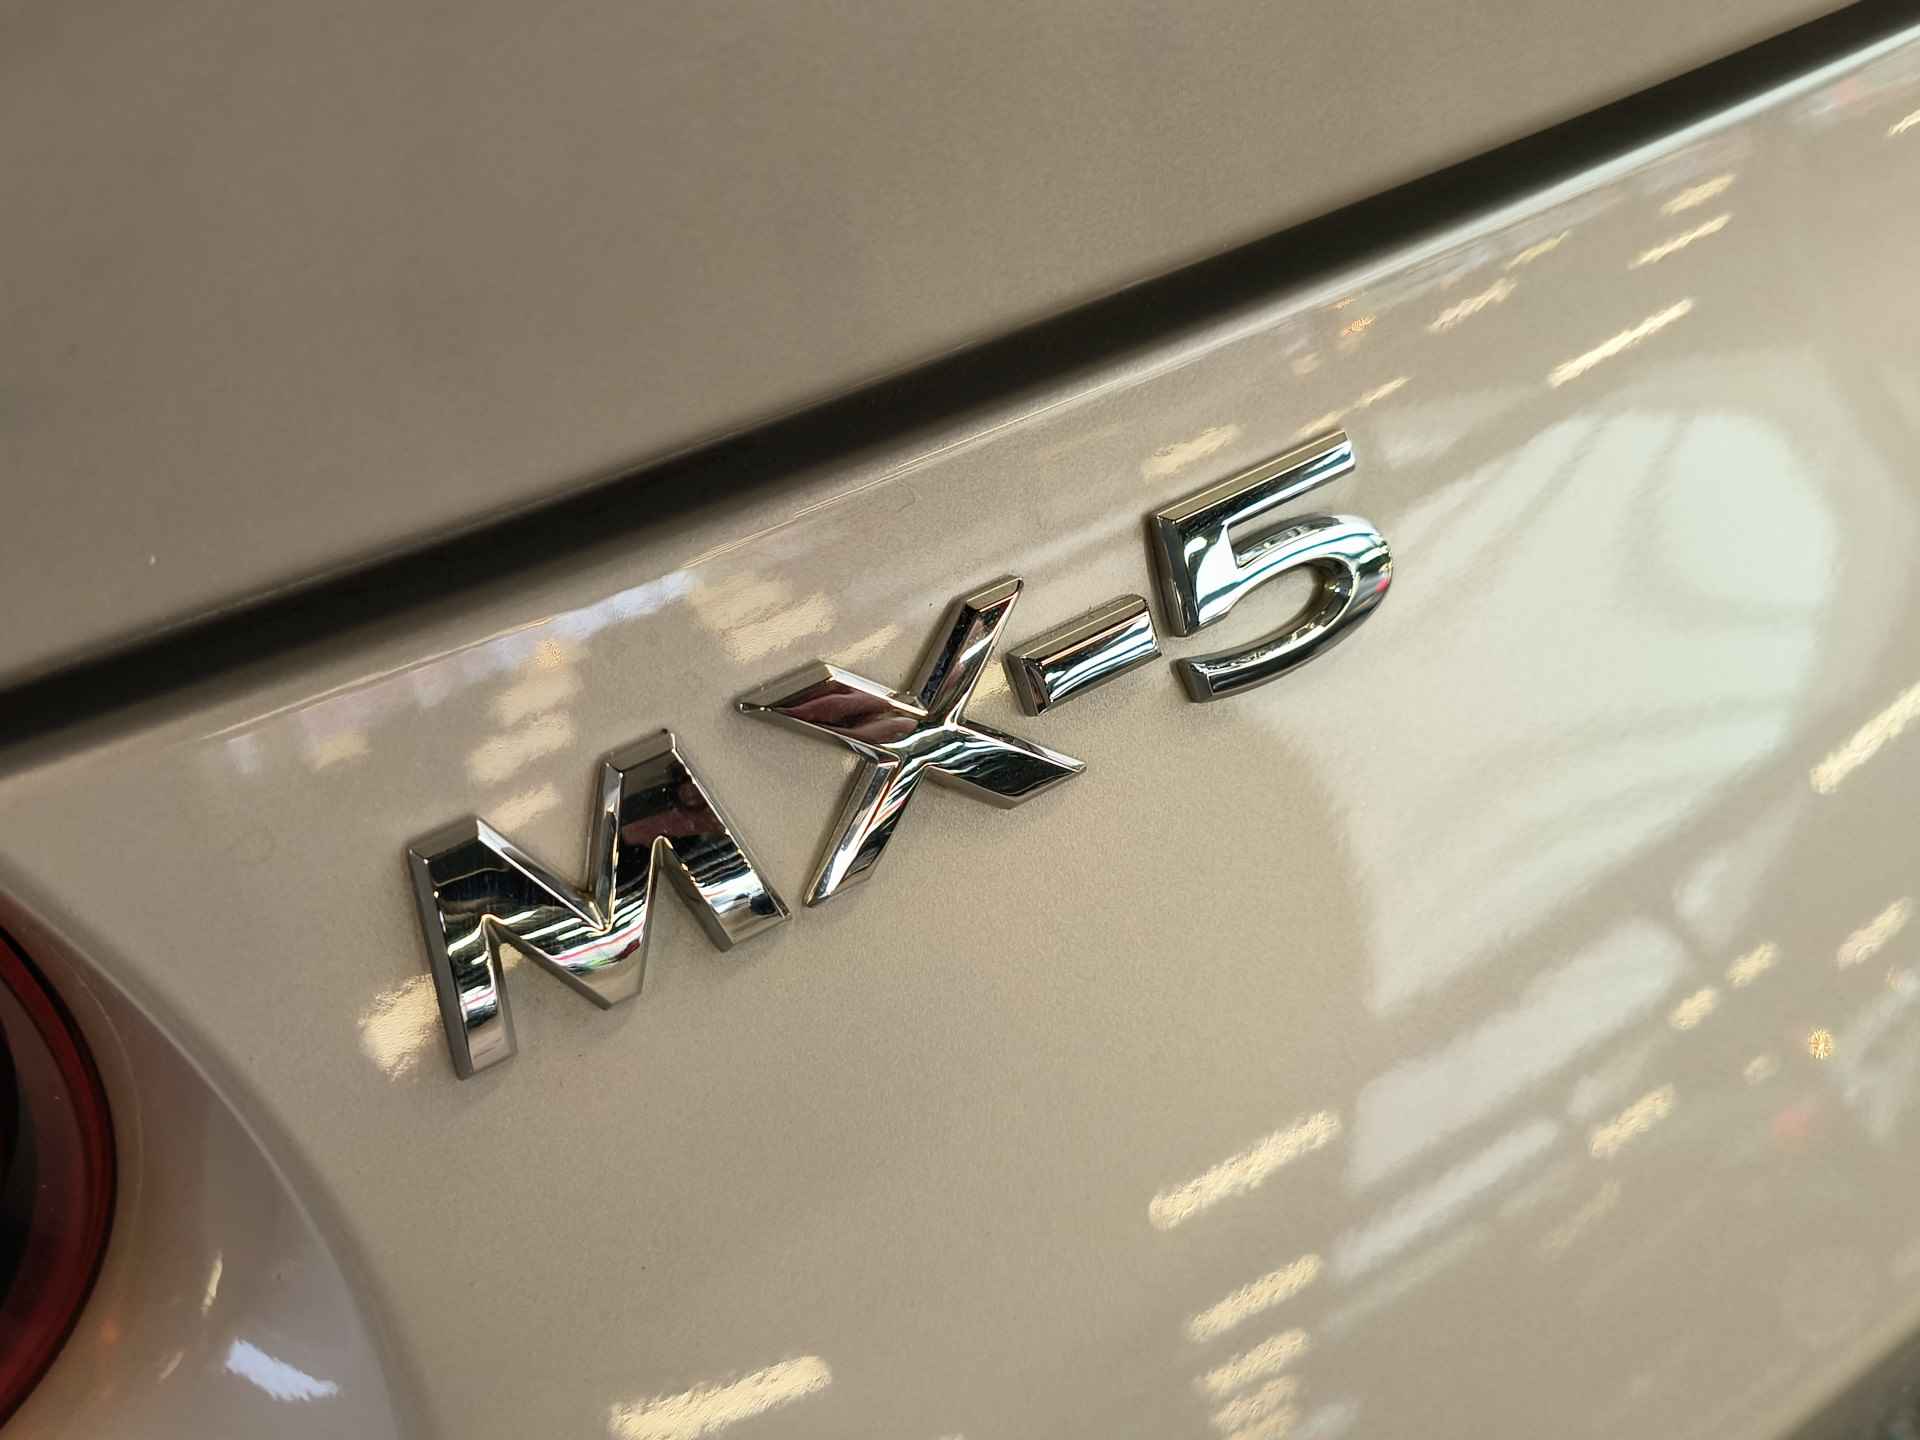 Mazda MX-5 1.5 SkyActiv-G 132 Rijklaar + Fabrieks garantie tot 11-2025 Henk Jongen Auto's in Helmond,  al 50 jaar service zoals 't hoort! - 32/32